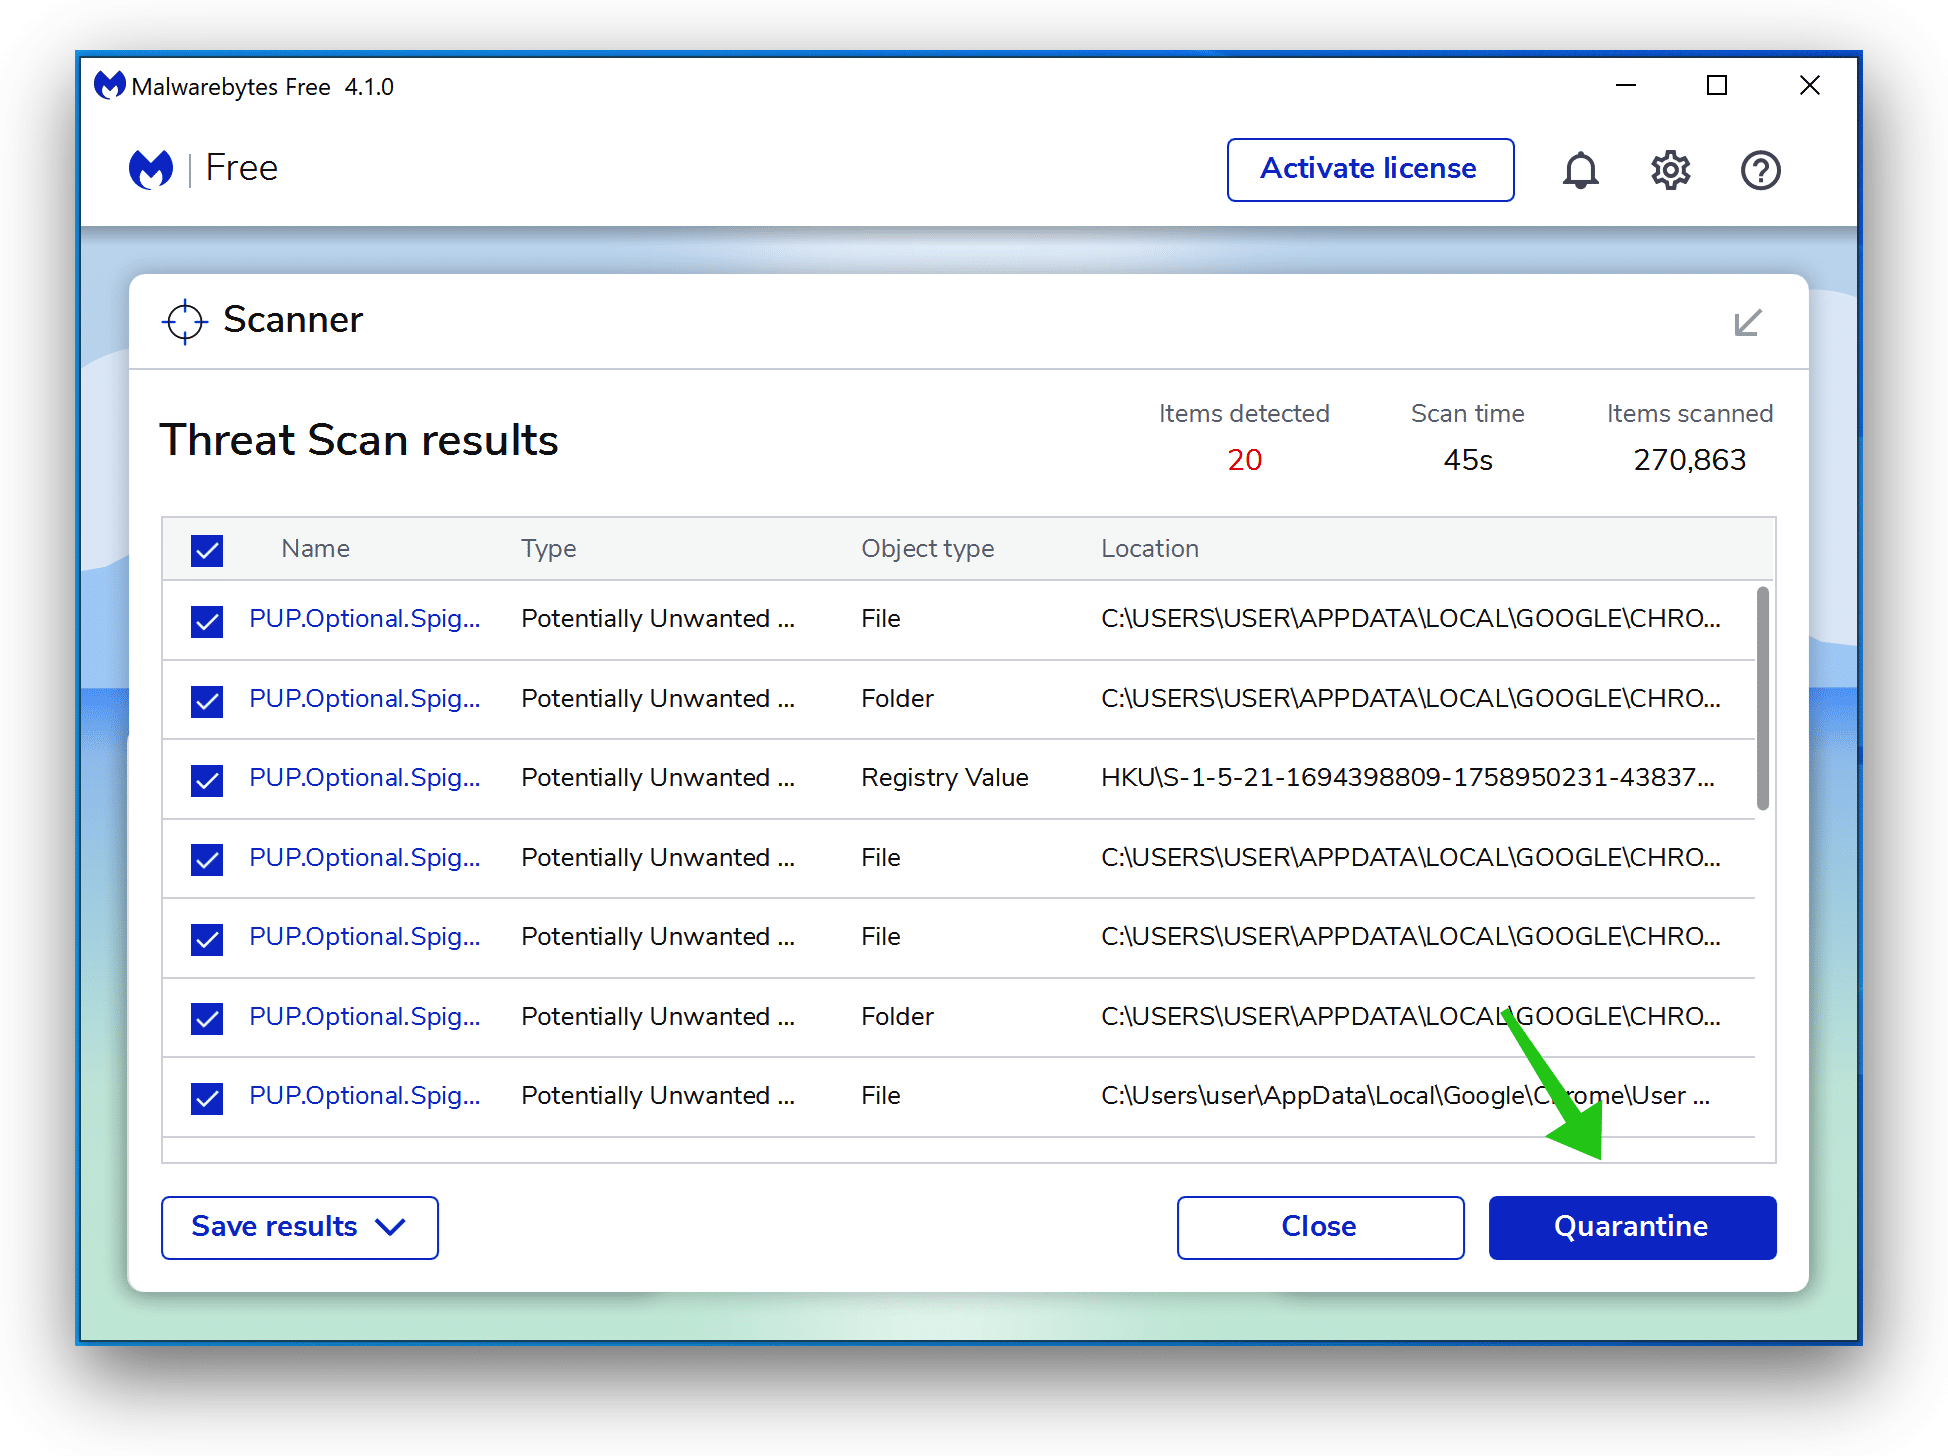 Hero-files.com removal with Malwarebytes